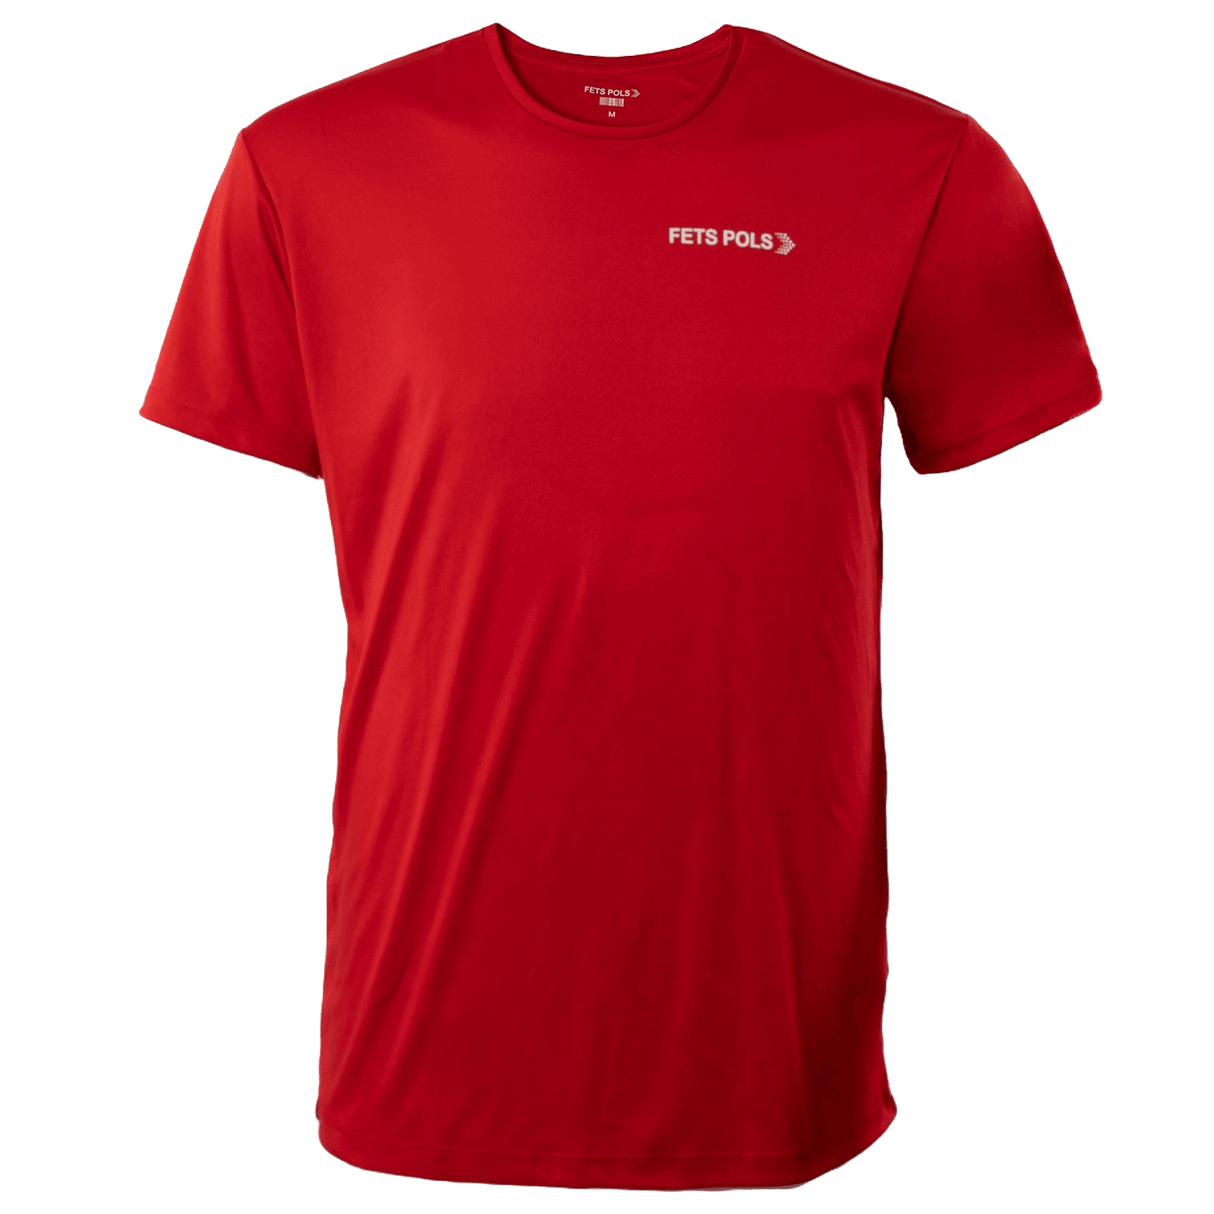 PIRINEU | camiseta deporte roja